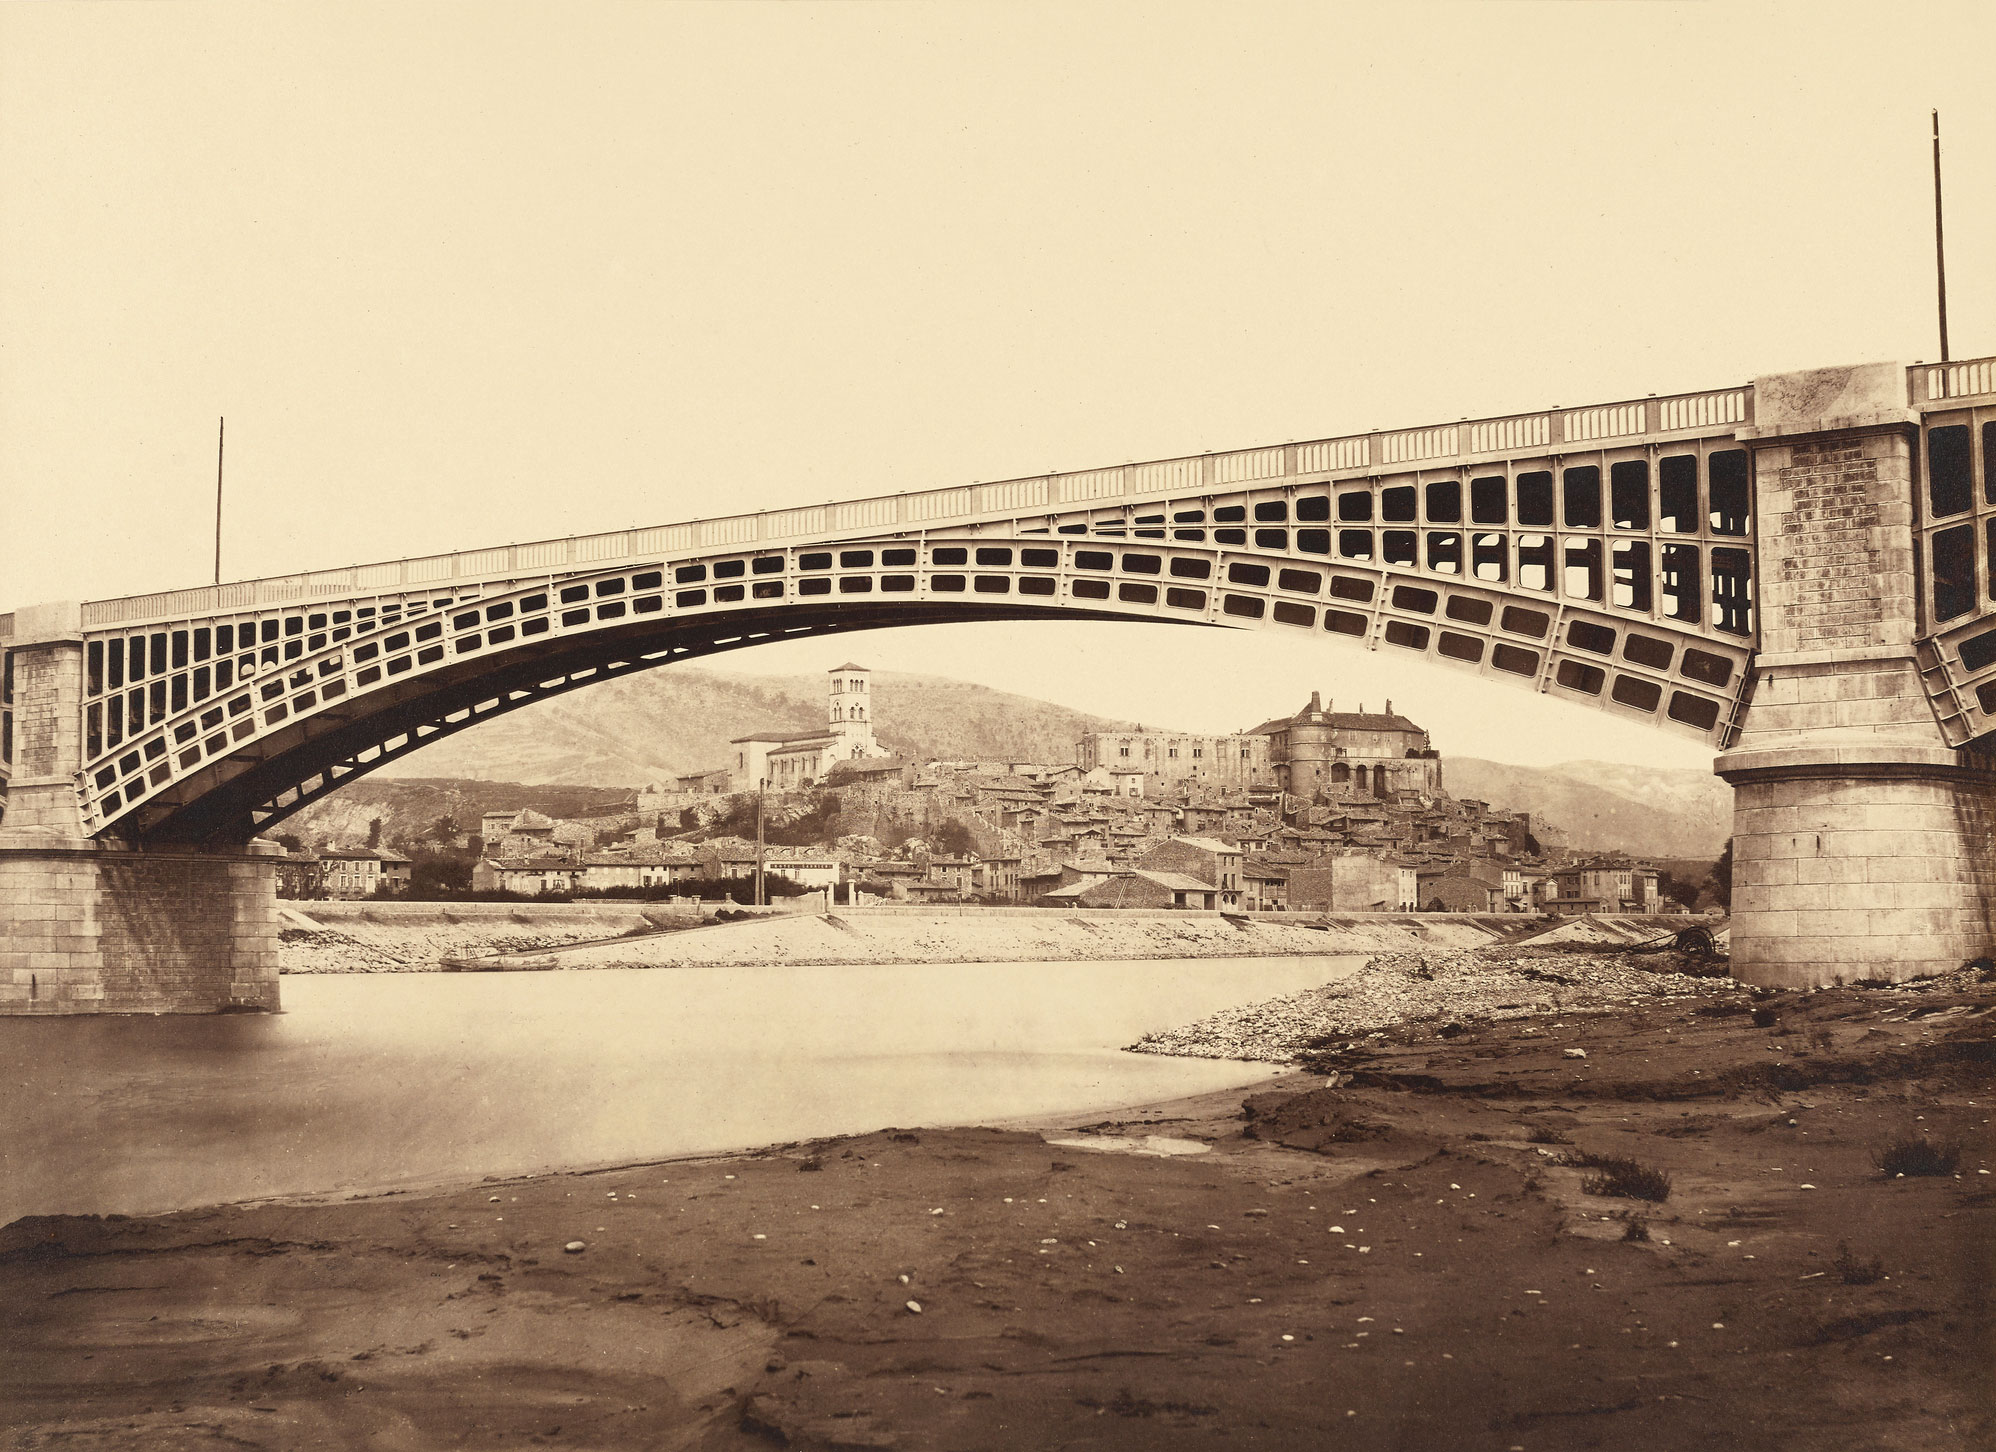 Édouard Baldus (French, born Germany, 1813-1889) 'Viaduct, La Voulte-sur-Rhône' c. 1861